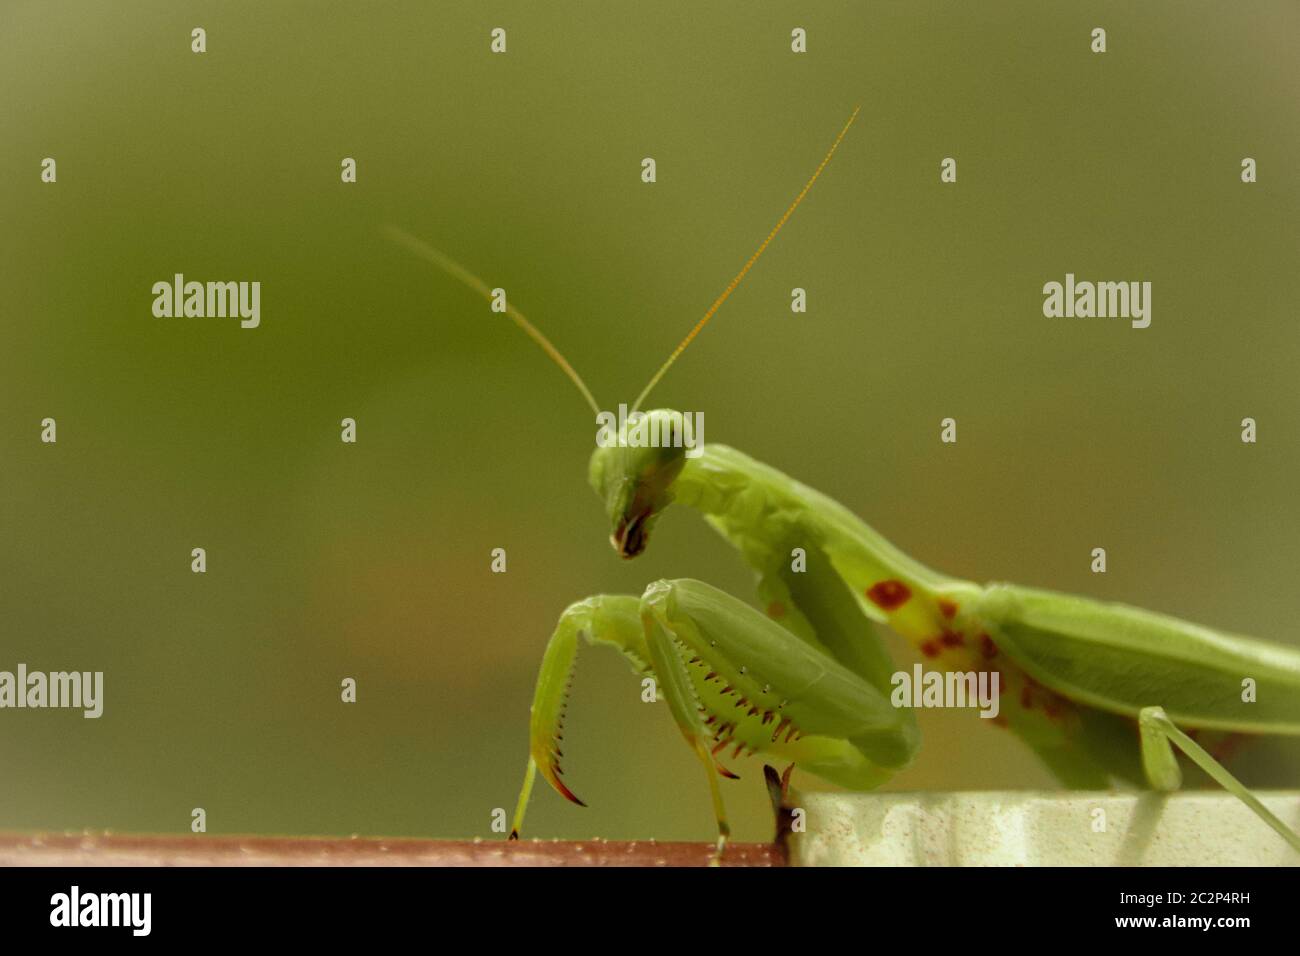 Cerca de un mantis verde rezando o Mantodea que Muestra el concepto de la temporada de primavera y verano Foto de stock